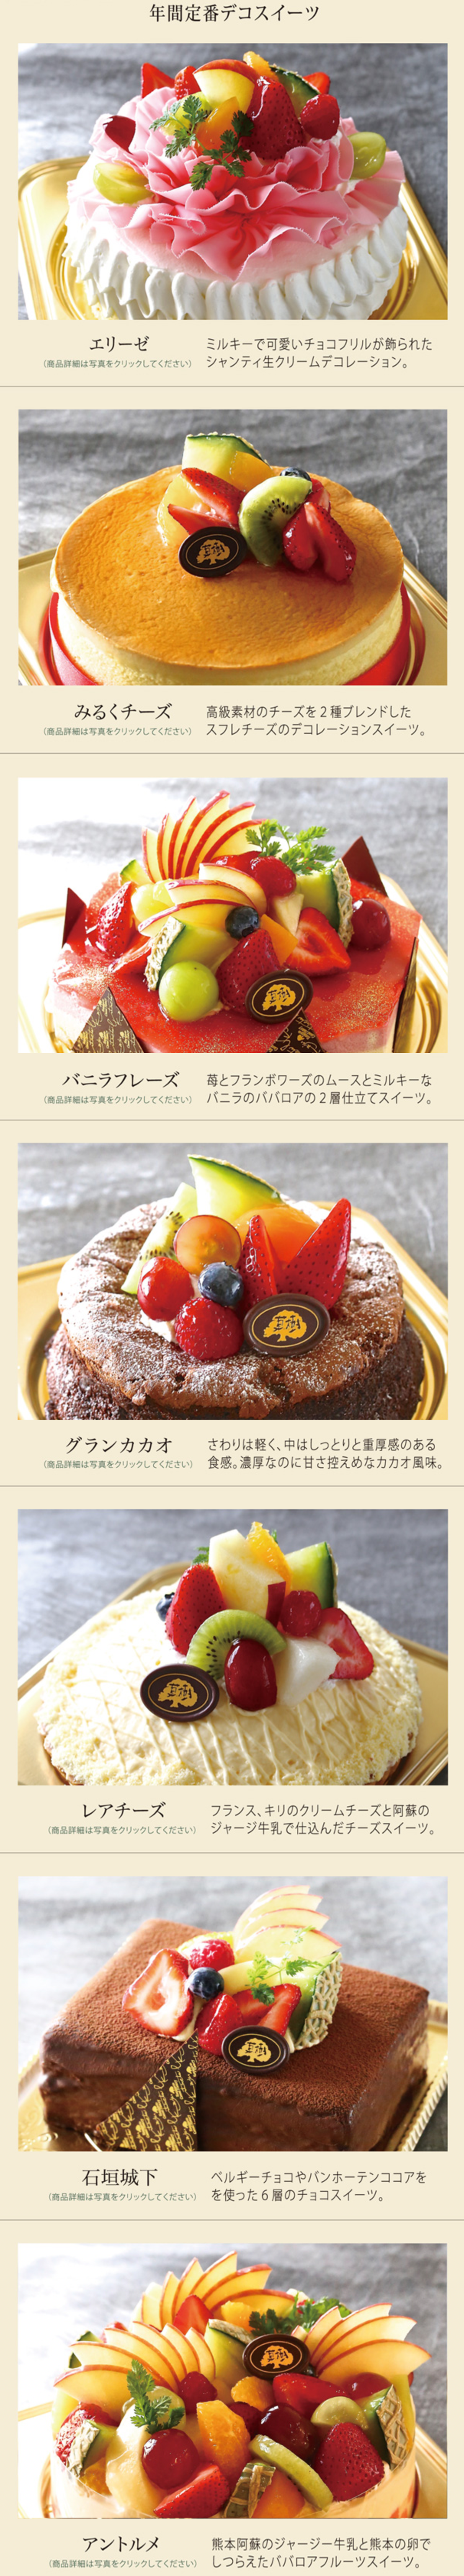 熊本県東区 アントルメ菓樹のテイクアウト情報 チョコフリルがのった可愛いケーキ クマモトテイカーズ